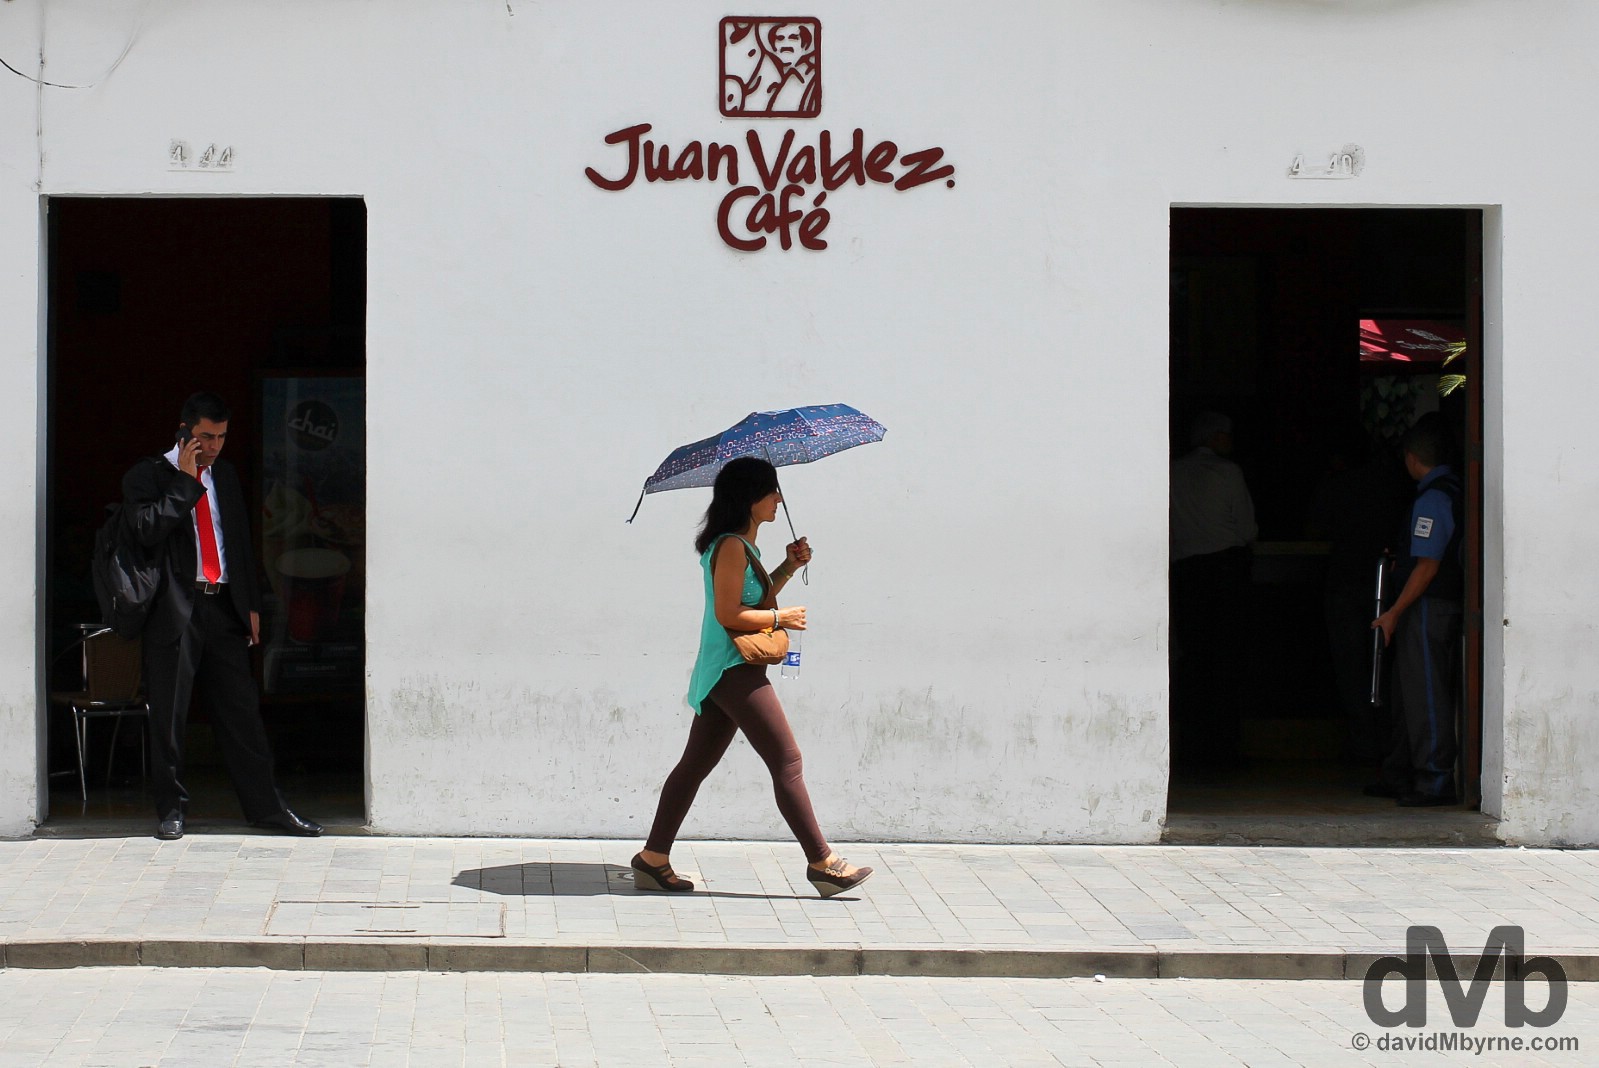 Juan Valdez Cafe off Parque Caldas in Popayan, Colombia. June 30, 2015.